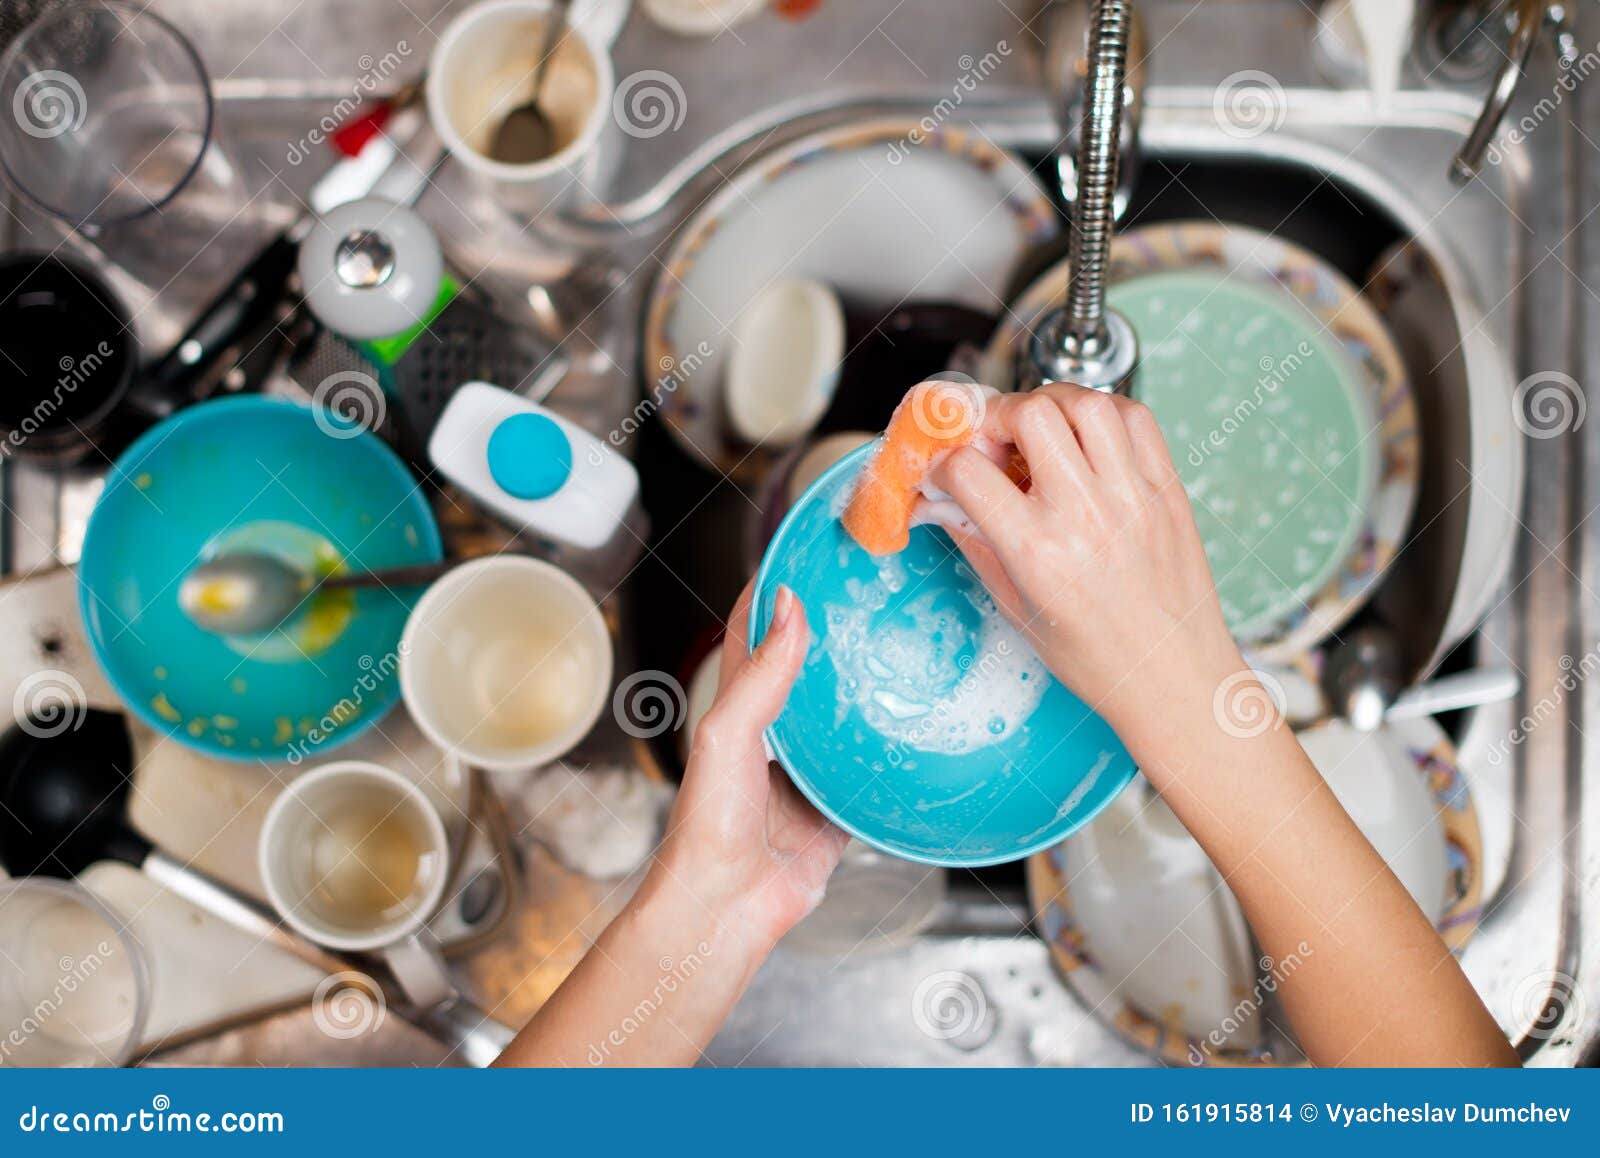 Мыть много много посуды